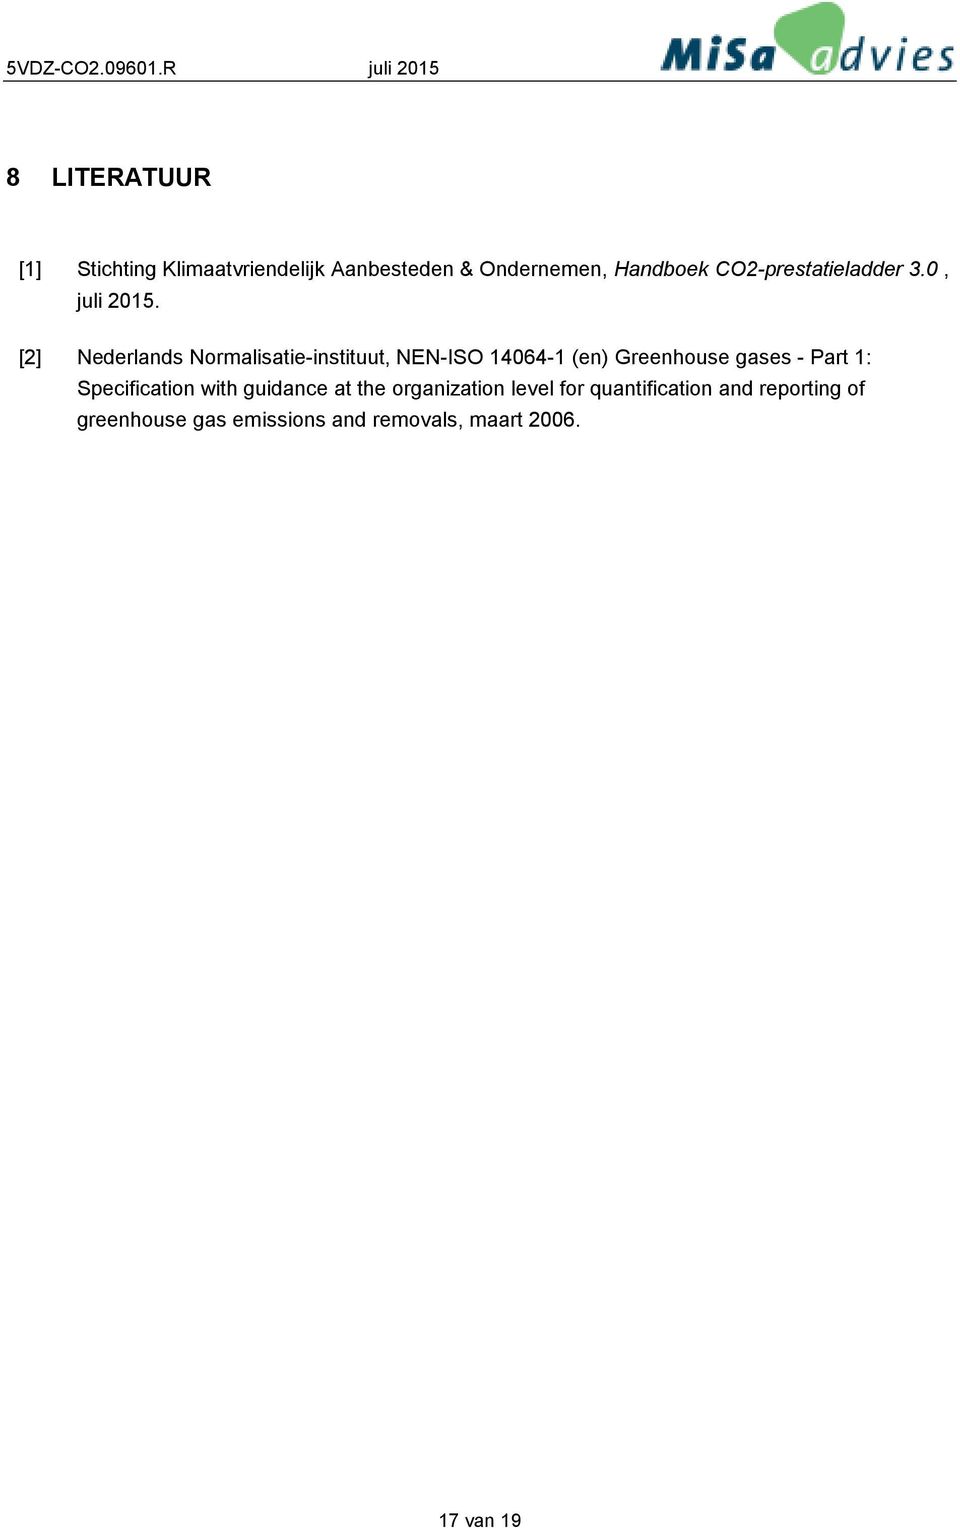 [2] Nederlands Normalisatie-instituut, NEN-ISO 14064-1 (en) Greenhouse gases - Part 1: